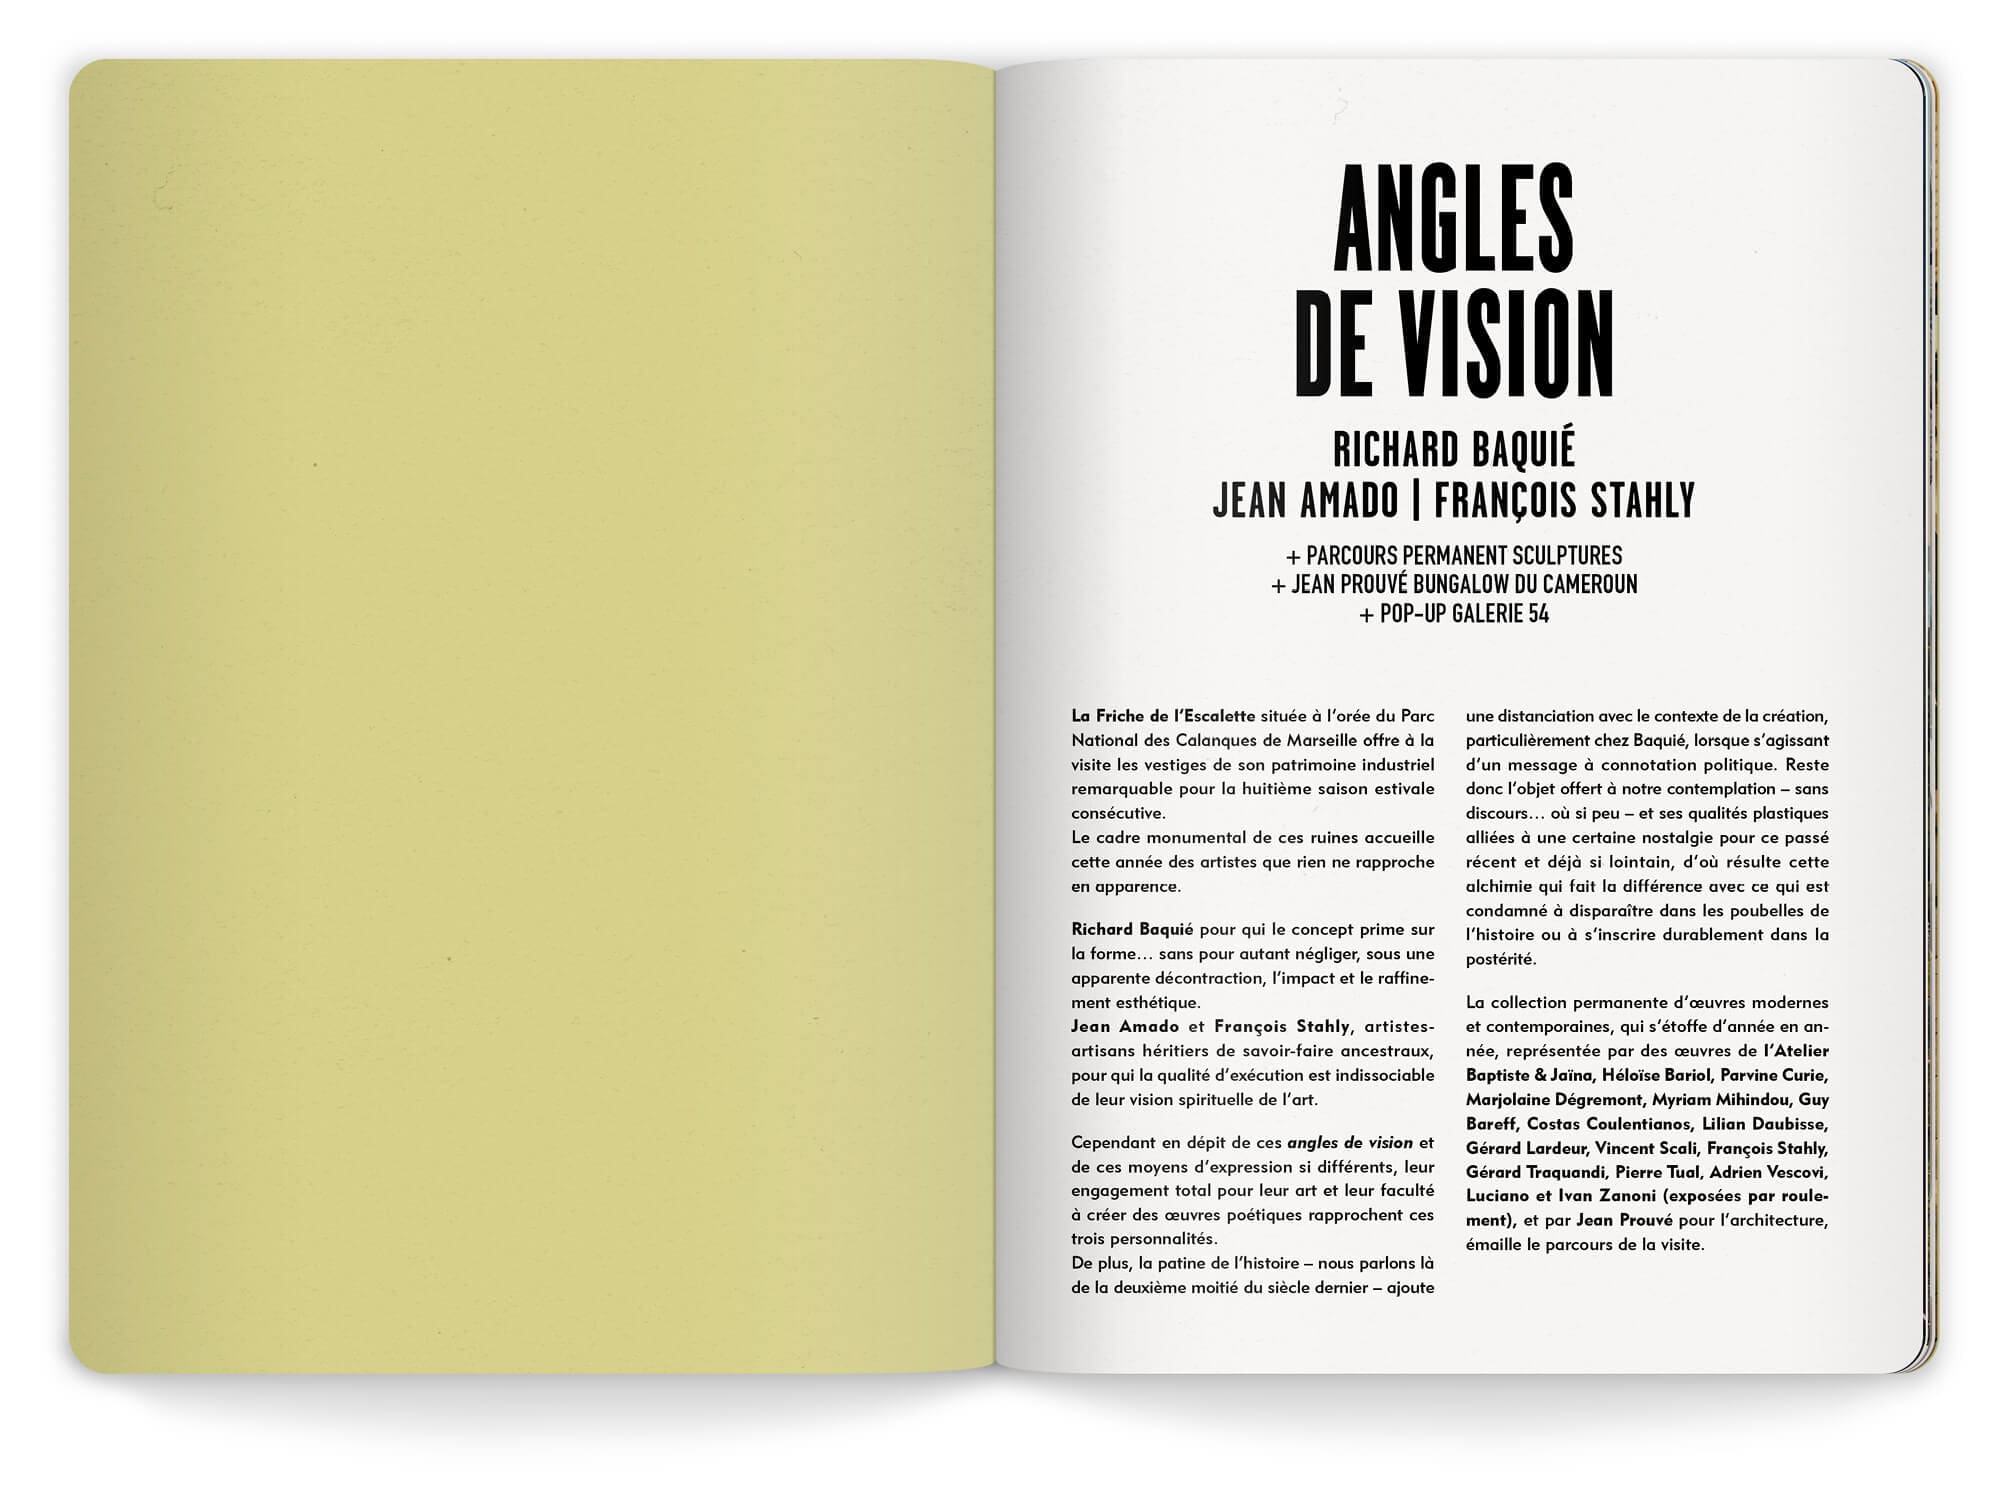 Première page du livret de l'exposition Angles de vision à la Friche de l'Escalette à Marseille, design IchetKar